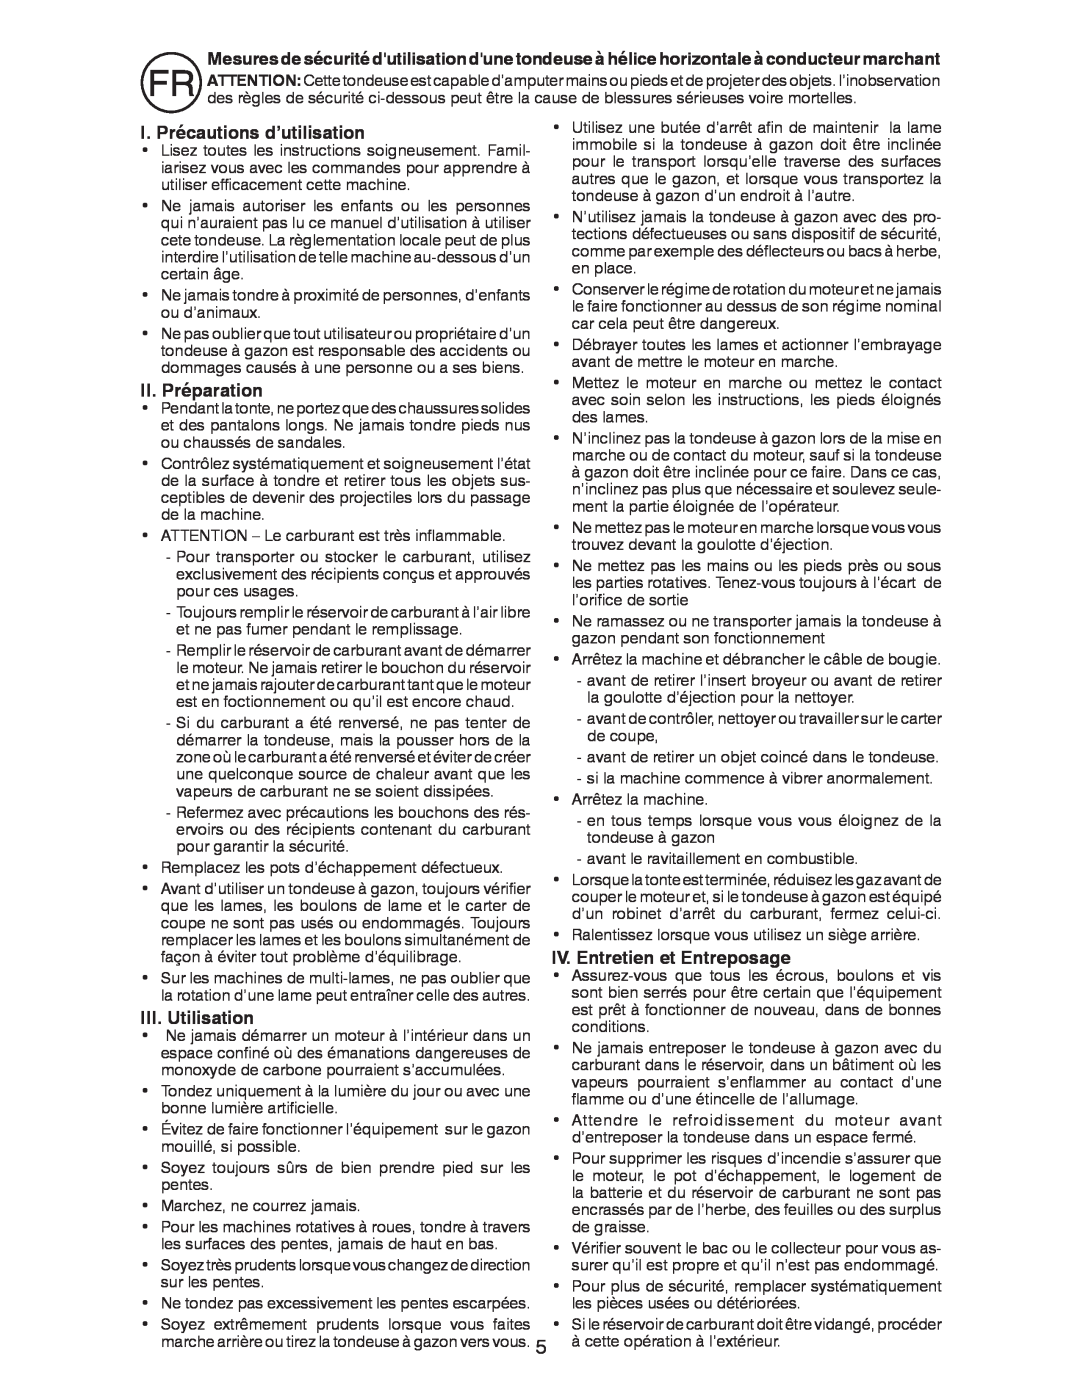 Husqvarna R52SVL I. Précautions d’utilisation, II. Préparation, III. Utilisation, IV. Entretien et Entreposage 